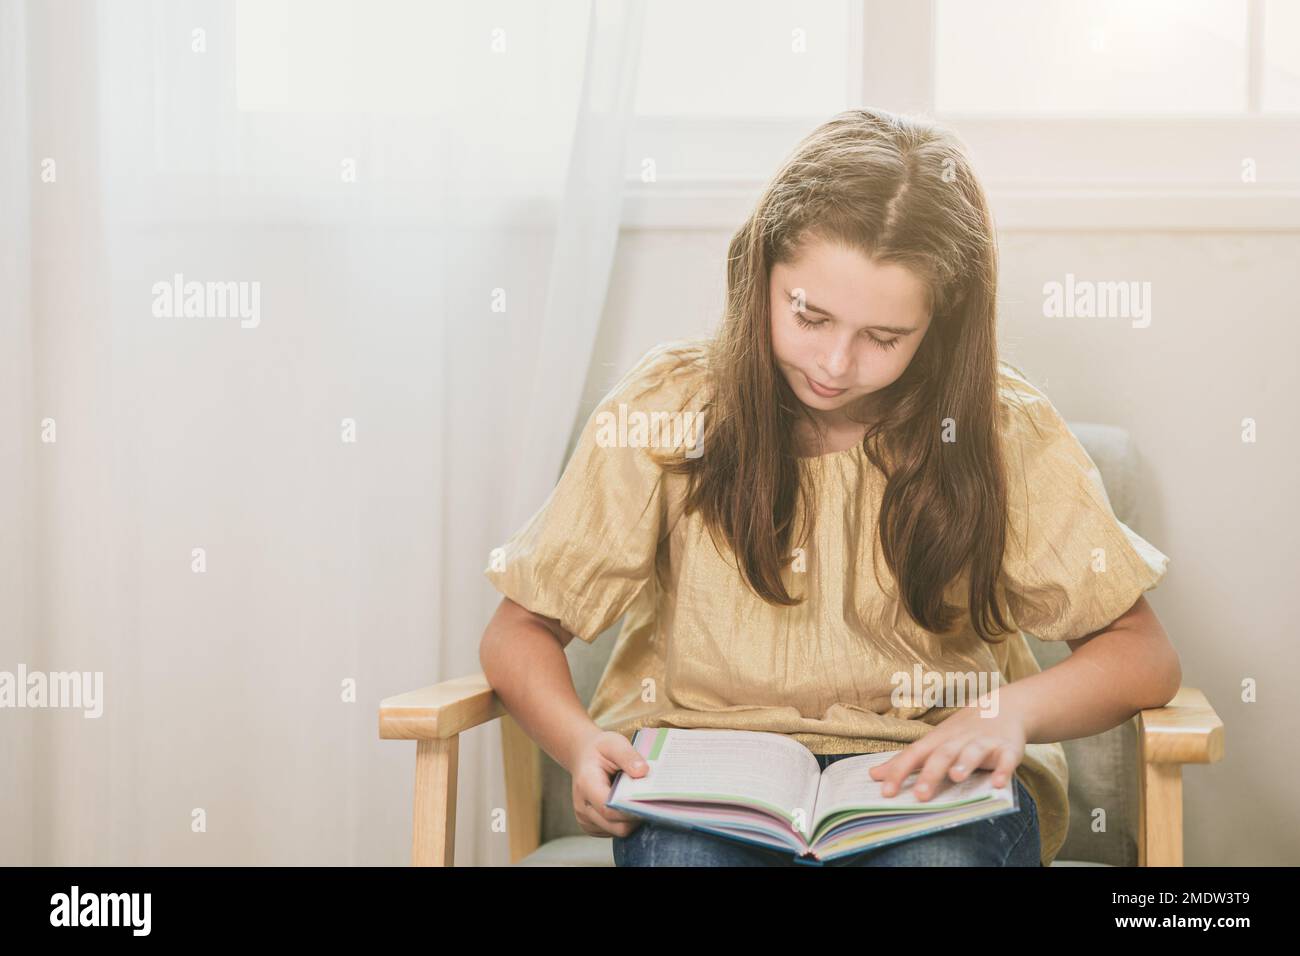 Süßes Kind, das zu Hause ein Buch liest für Buchwurm-Nerdy kluges Kind, das Selbstunterricht lernt Stockfoto